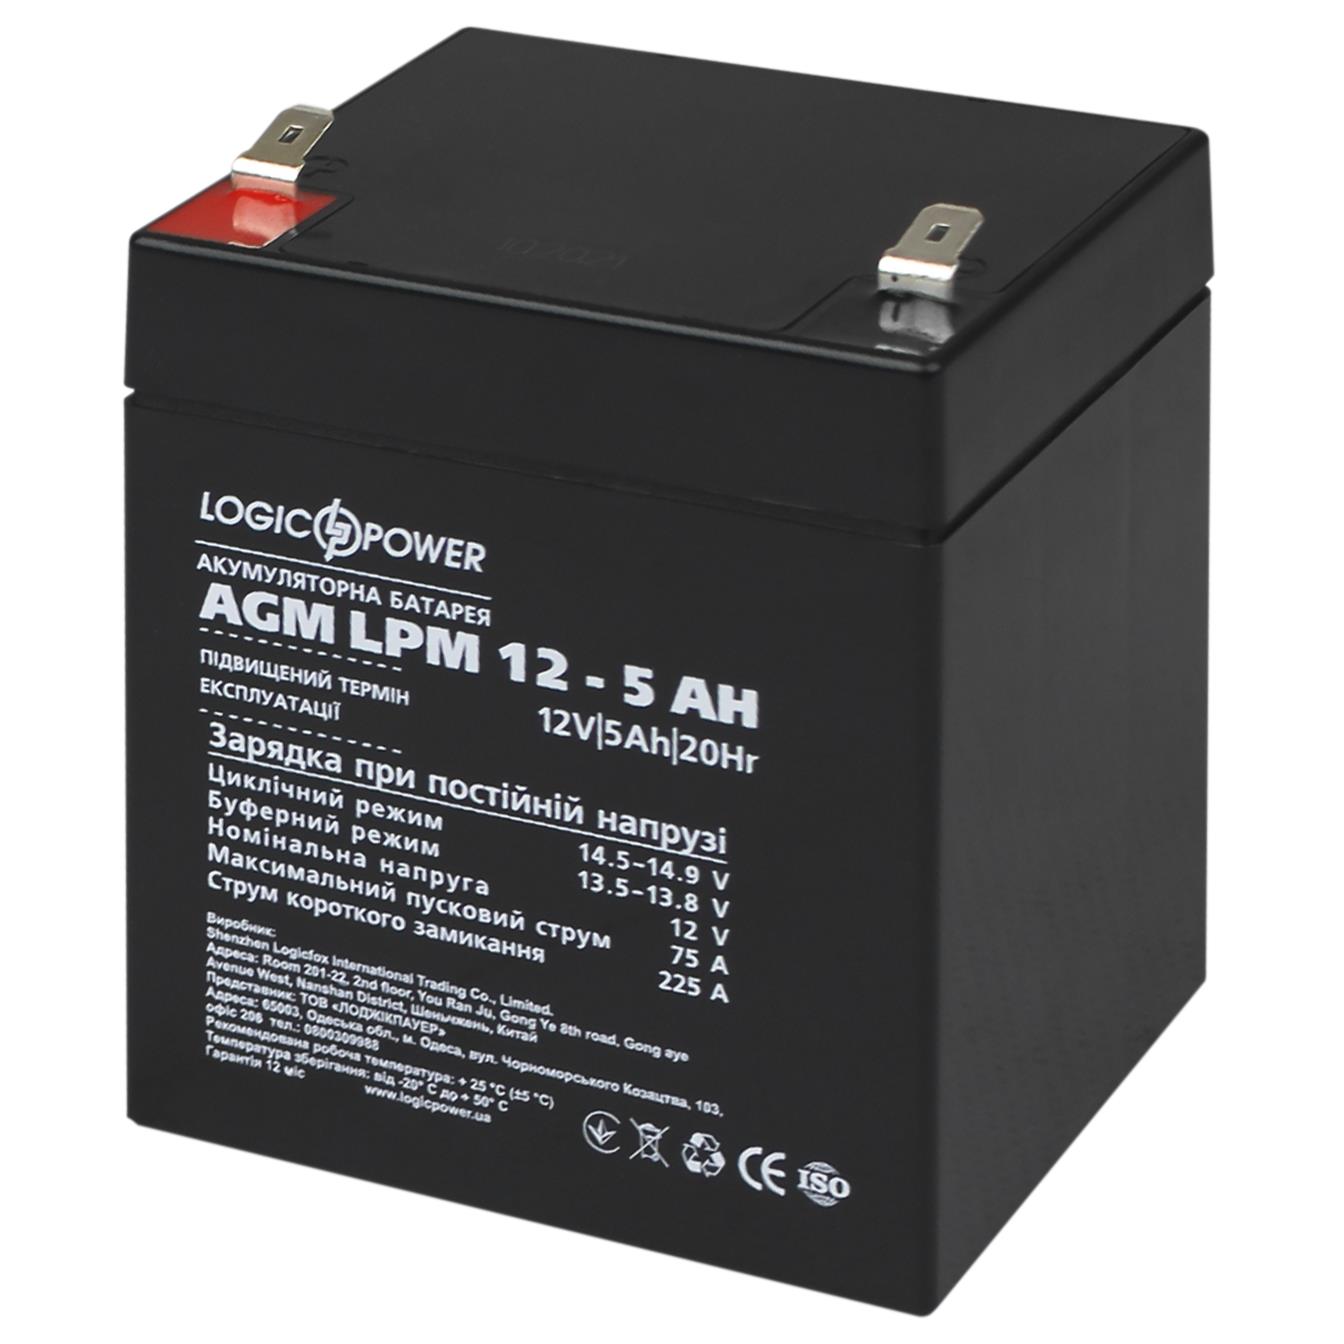 Акумулятор 5 A·h LogicPower AGM LPM 12V - 5 Ah (3861) в Києві